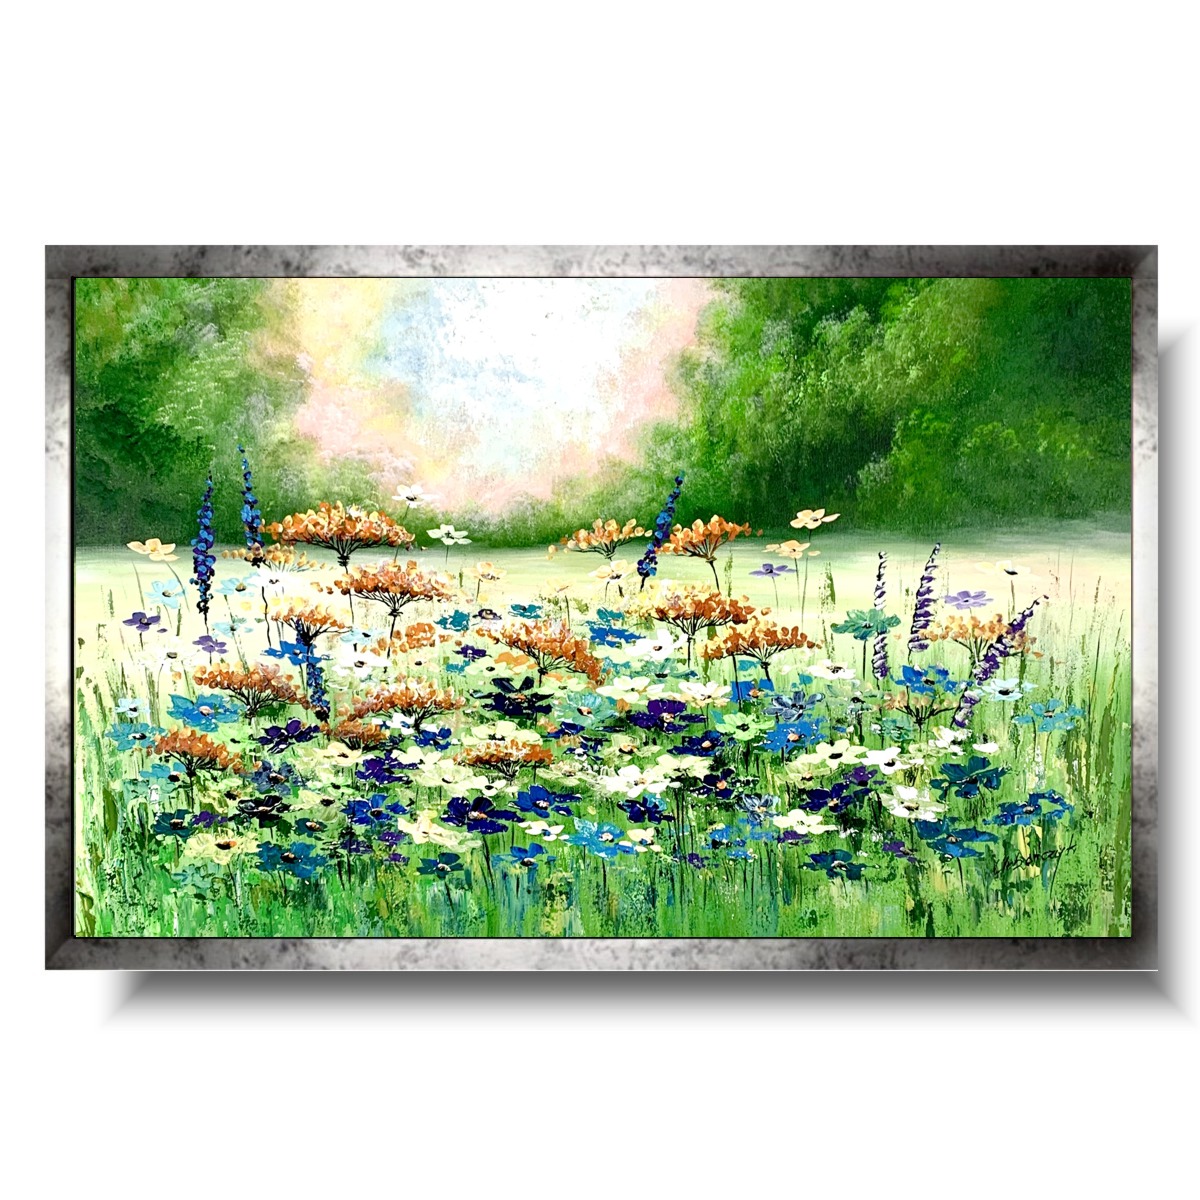 Obraz zielona łąka kwiatowa, obrazy kwiaty polne, obraz kwiaty, kwiaty obrazy, obrazy z kwiatami, obraz łąka kwiatowa